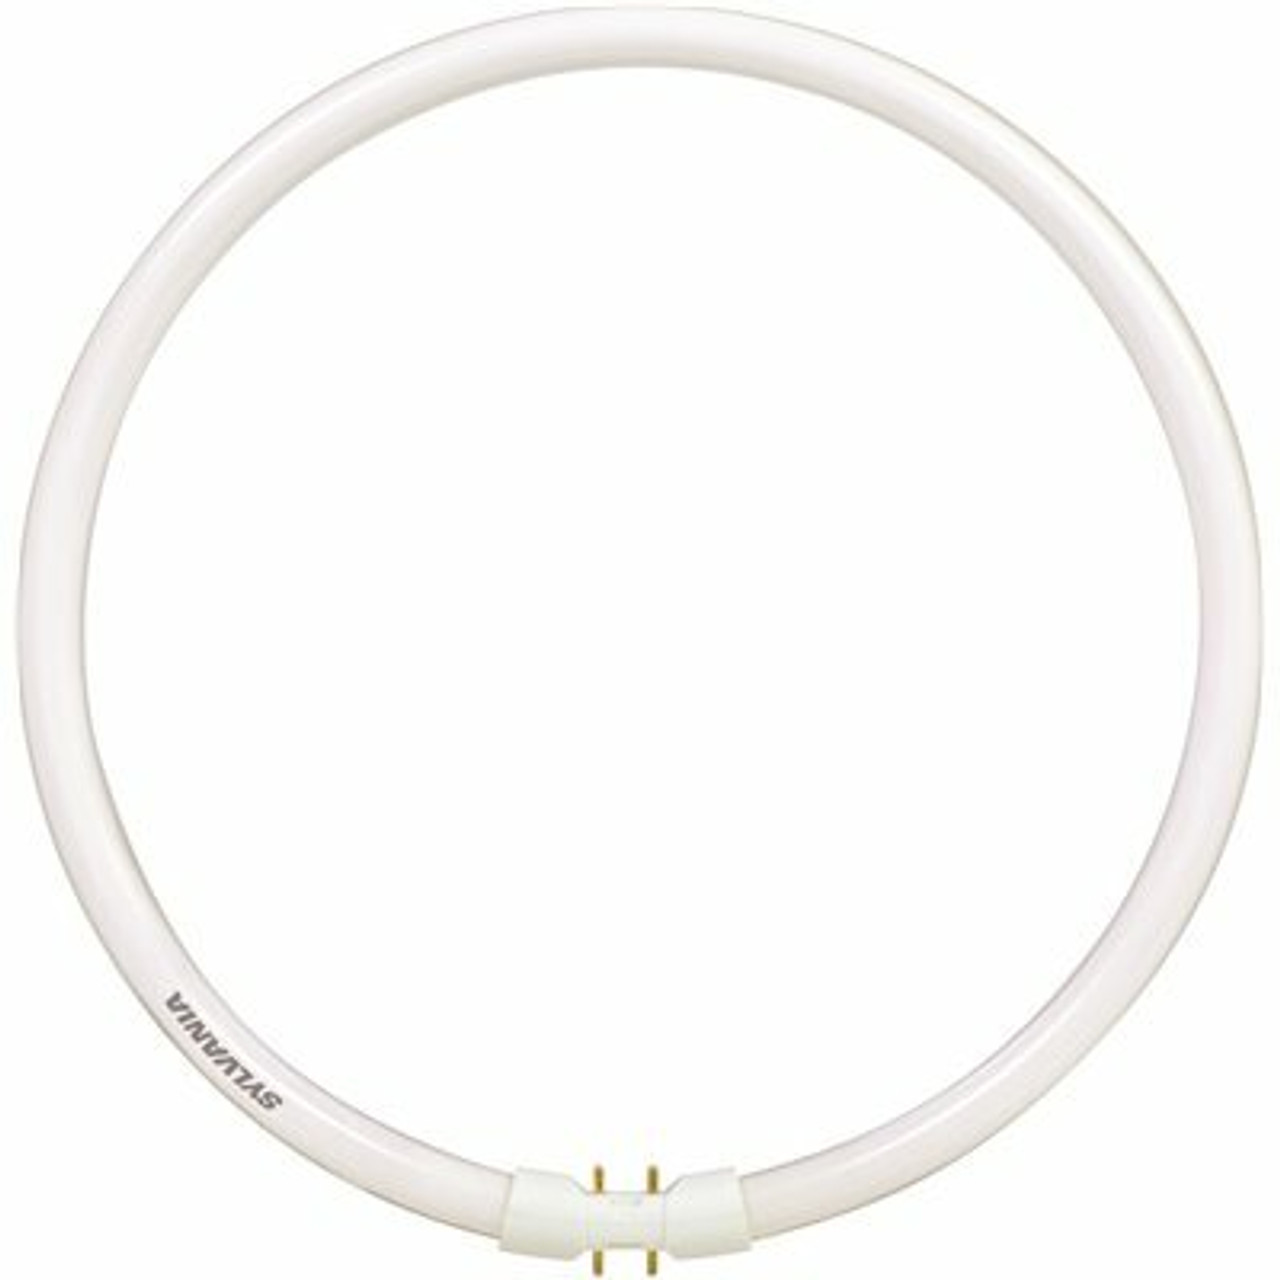 Sylvania 12 In. 55-Watt Circline T5 Fluorescent Tube Light Bulb, Soft White (1-Bulb)